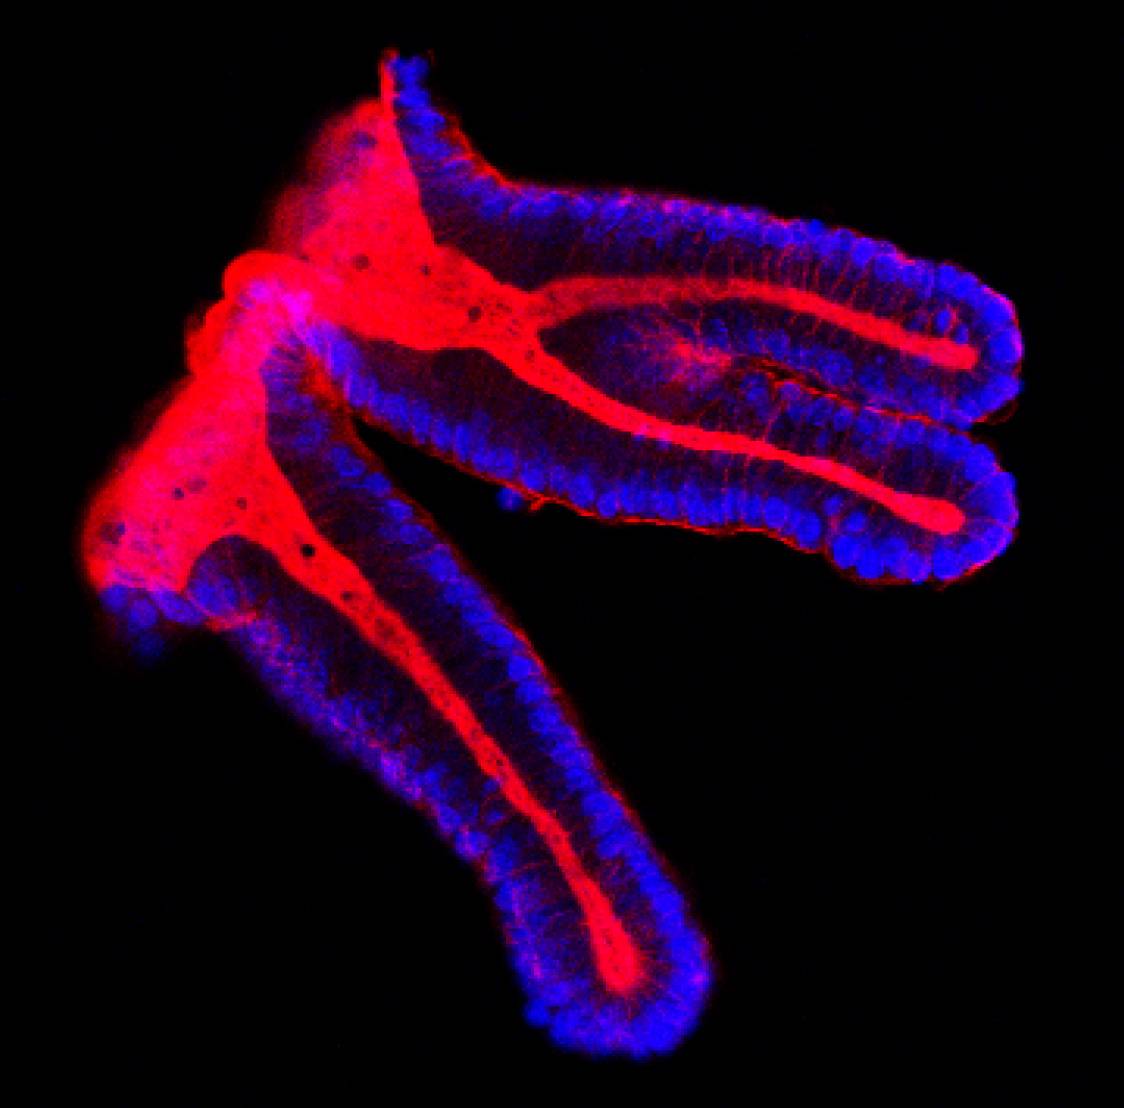 Células epiteliales de colon. Imagen: IRB 